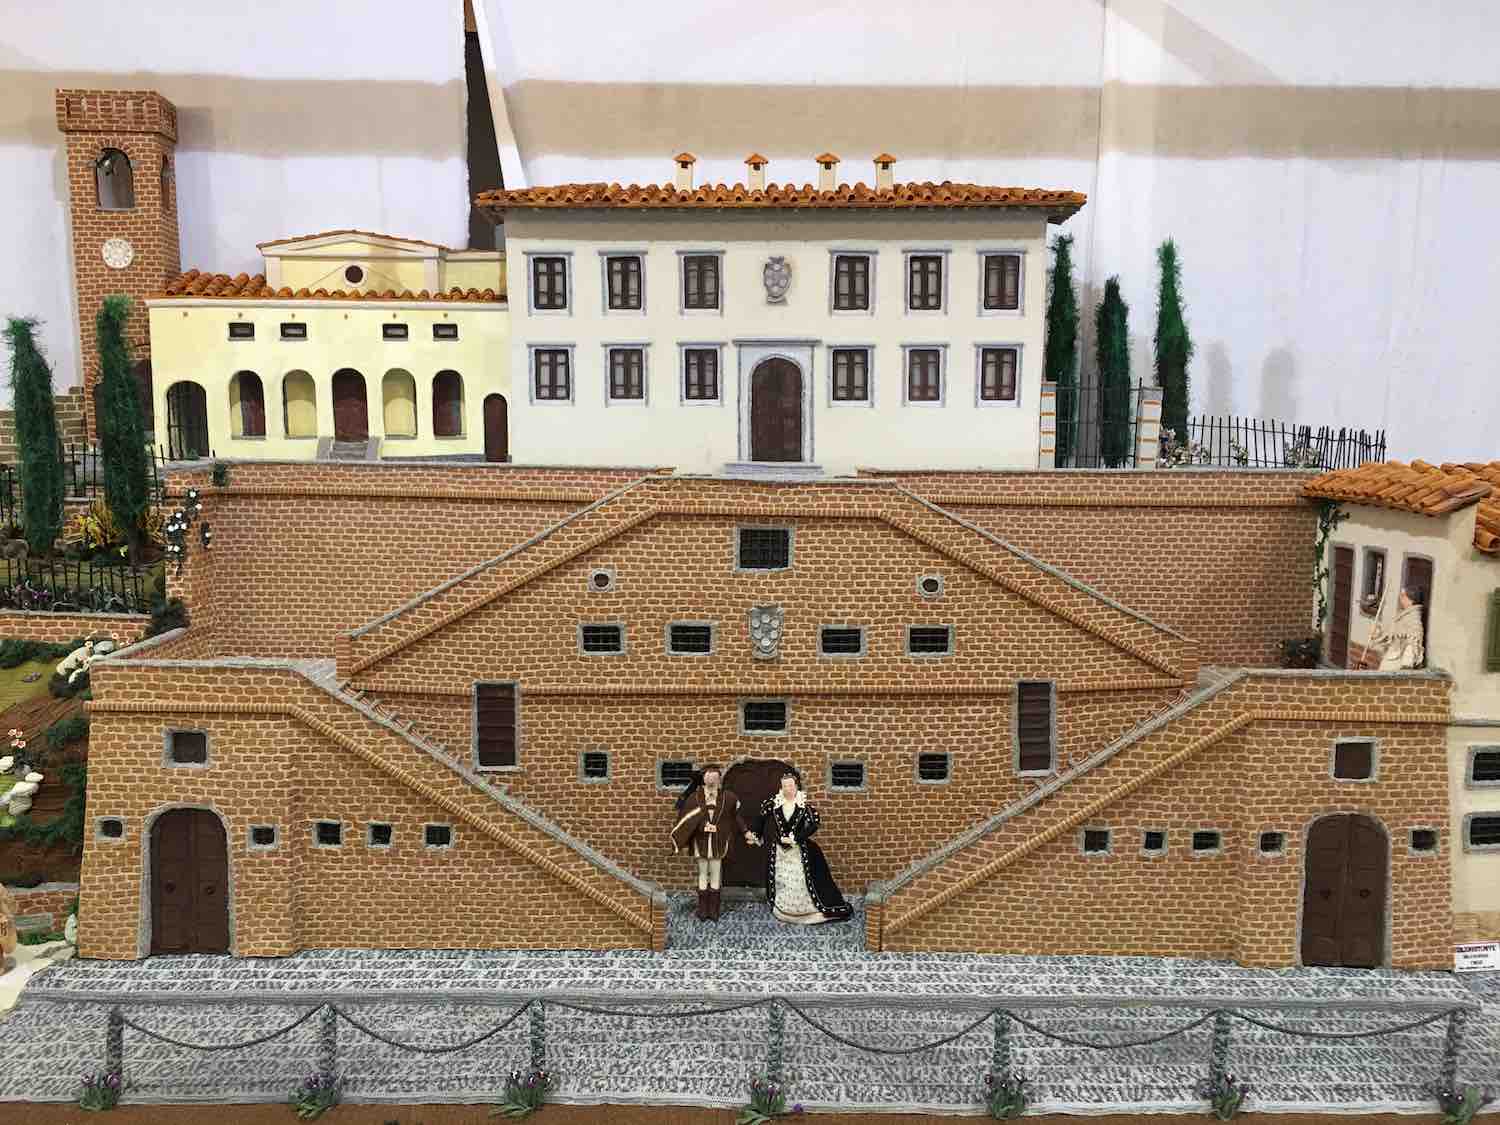 La Via dei Presepi di Cerreto Guidi è una mostra-concorso che vede protagonista un intero borgo toscano nel realizzare presepi artigianali